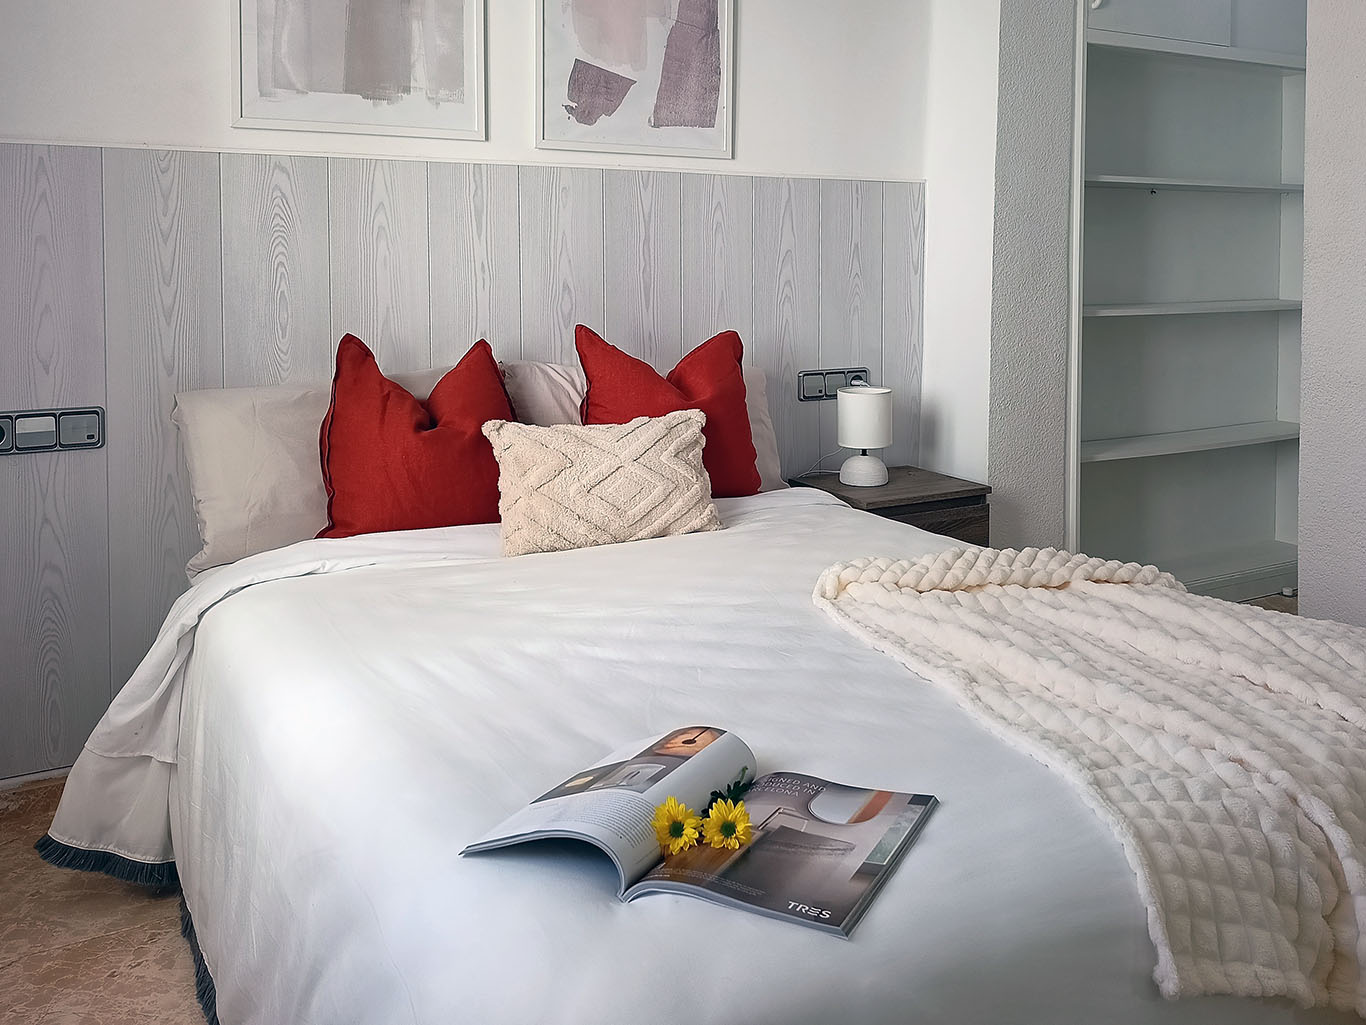 Detalle Dormitorio 1 Piso Feliz Home Staging Premium en Valencia